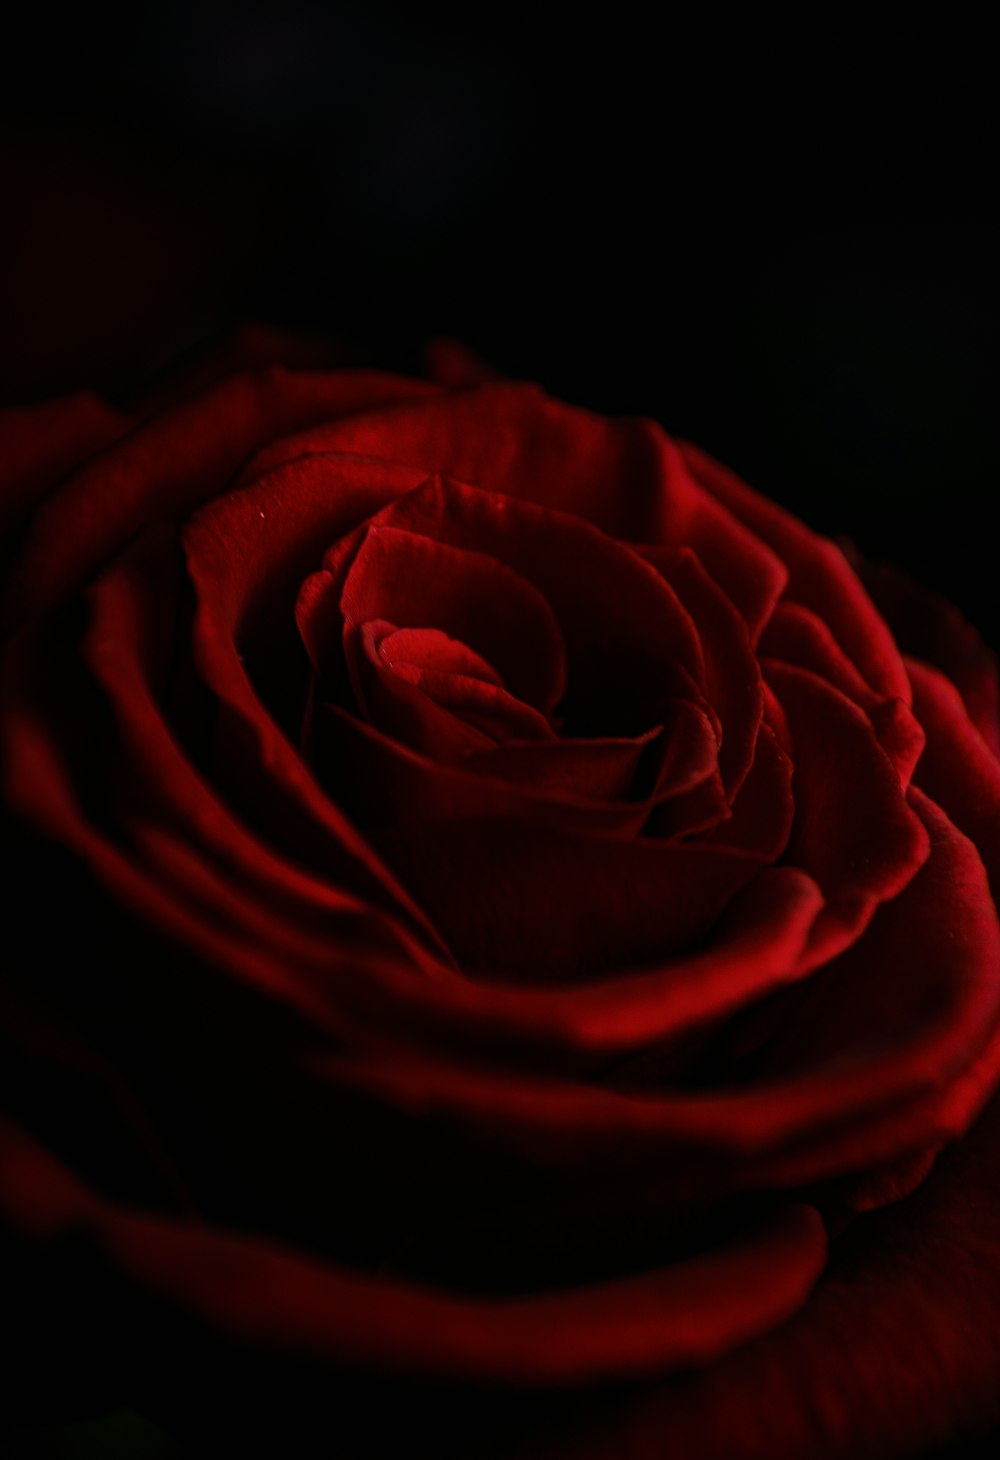 Rosa roja en fotografía de primer plano